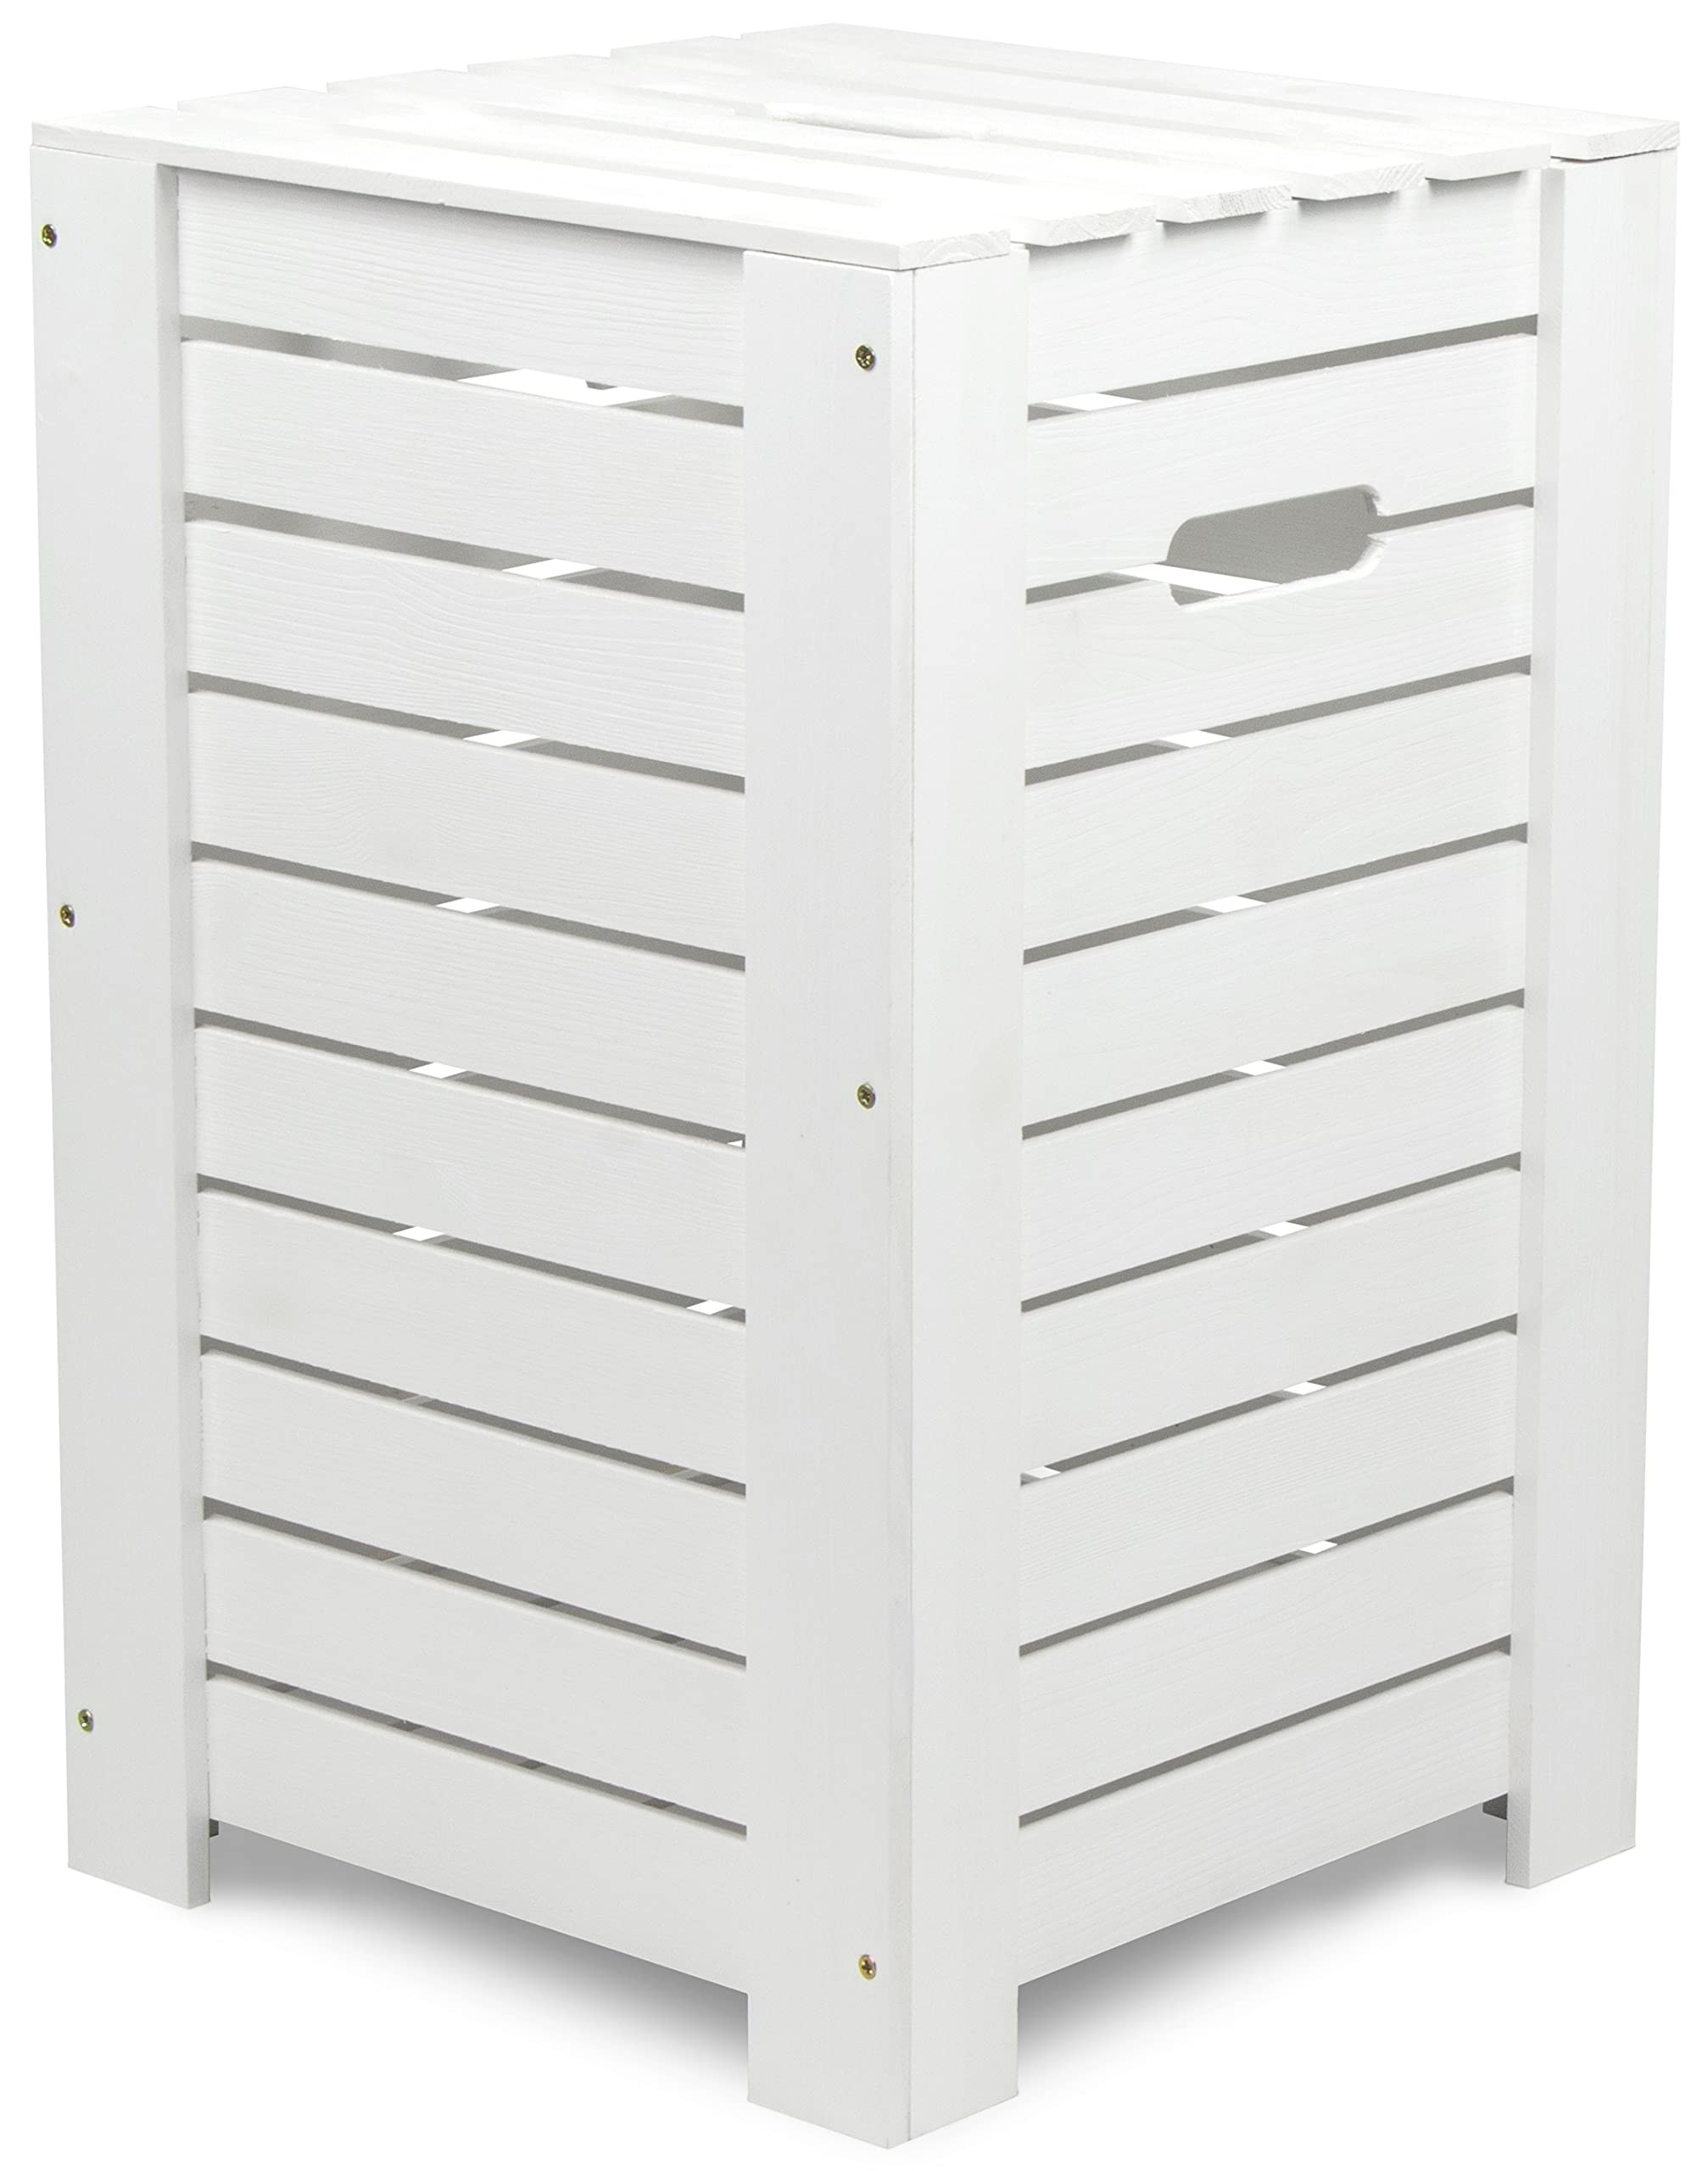 LAUBLUST Wäschekorb zur Aufbewahrung in Größe L - Kiefer Weiß ca. 55 x 35 x 35 cm - Wäschesammler mit Griffen - Deckel und Herausnehmbarer Boden